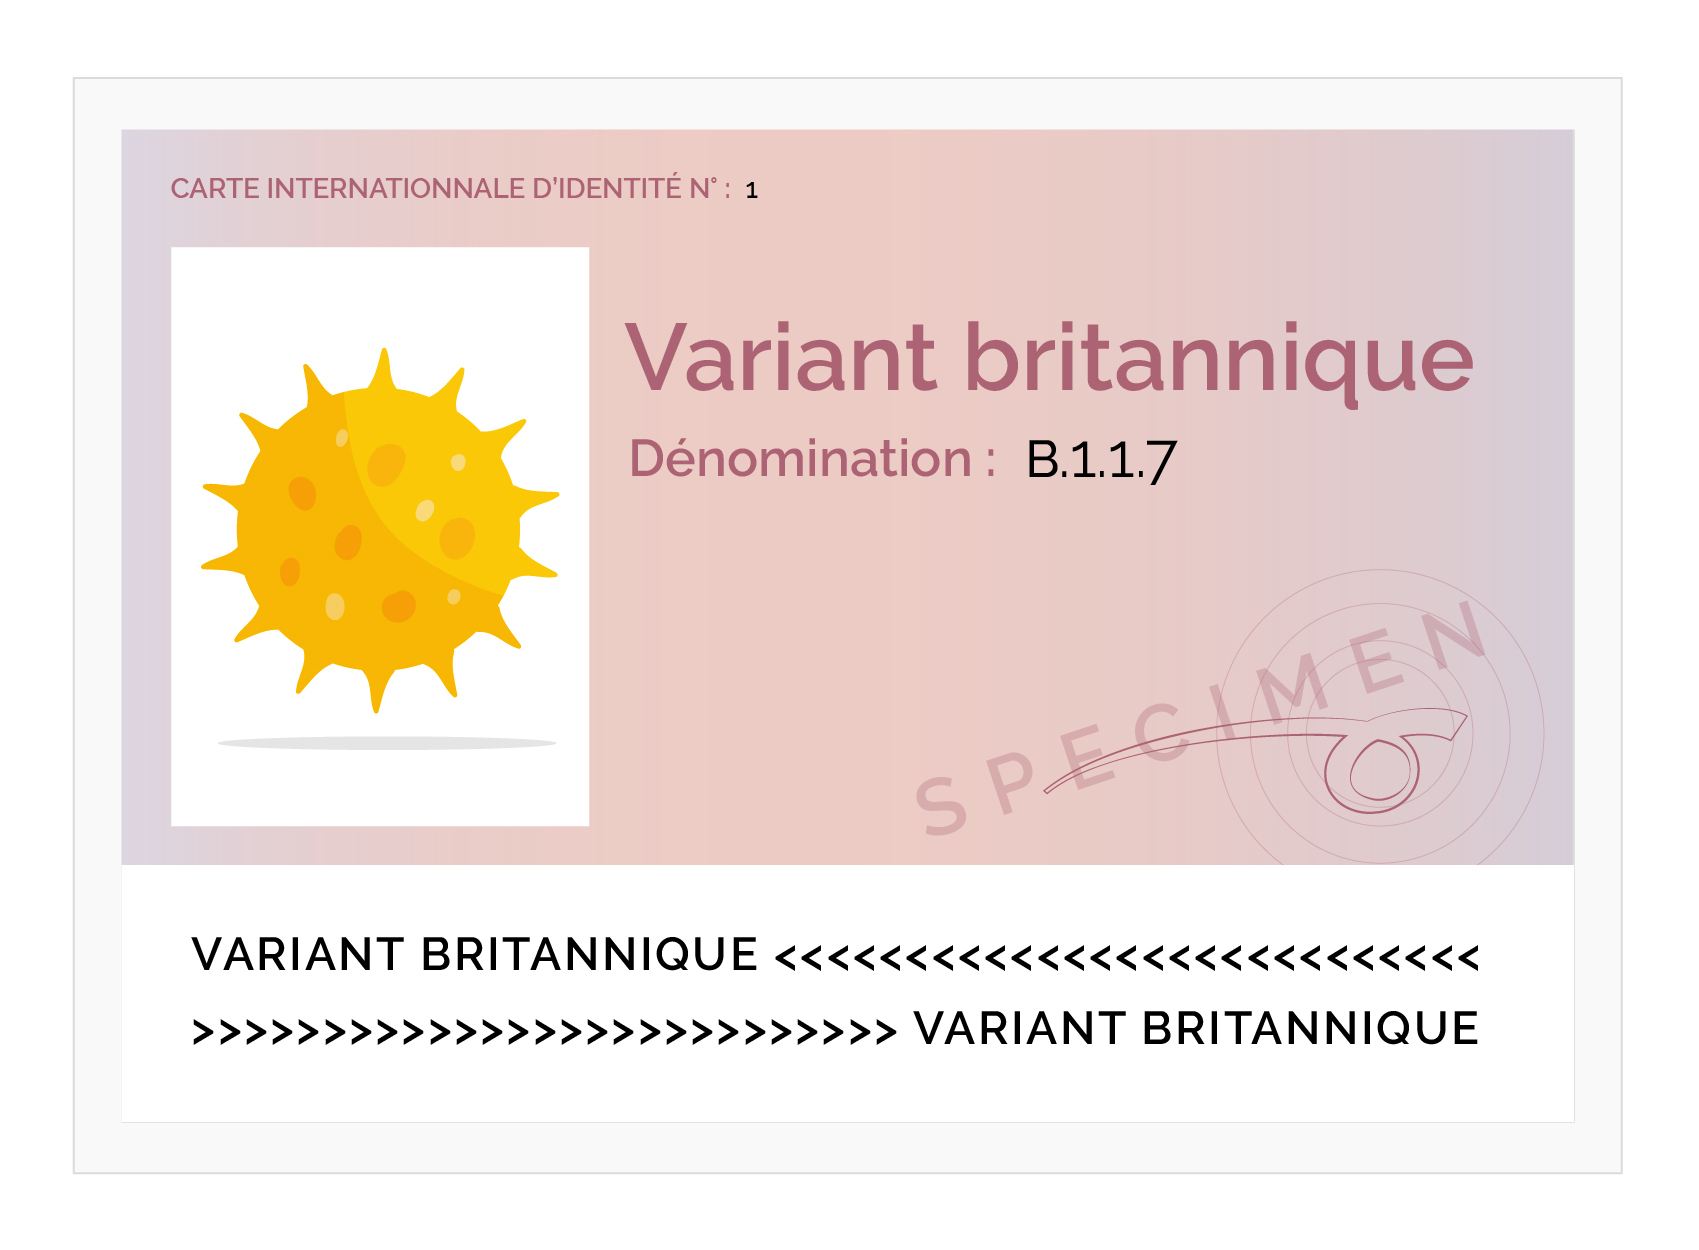 carte d identite variant V2_variant britannique (2)